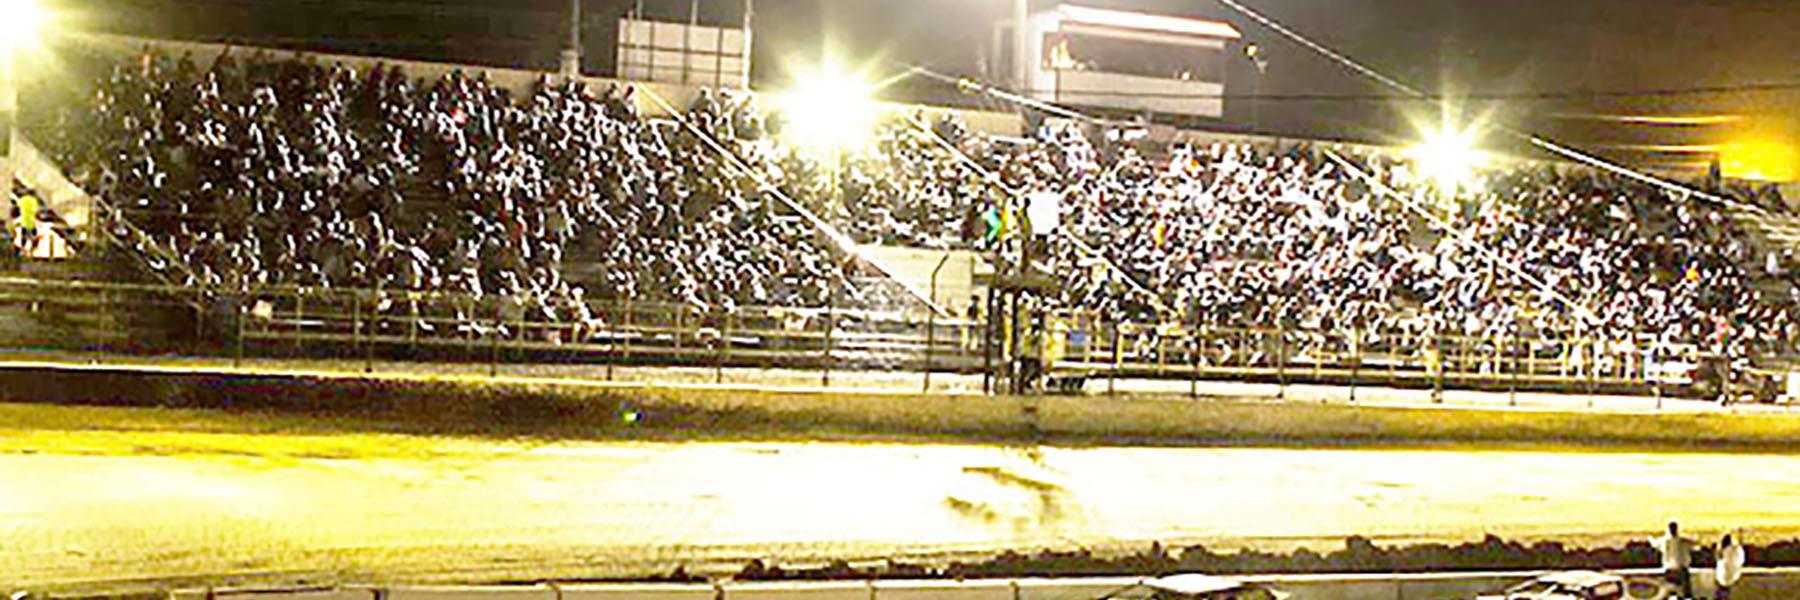 8/27/2022 - Tri-State Speedway